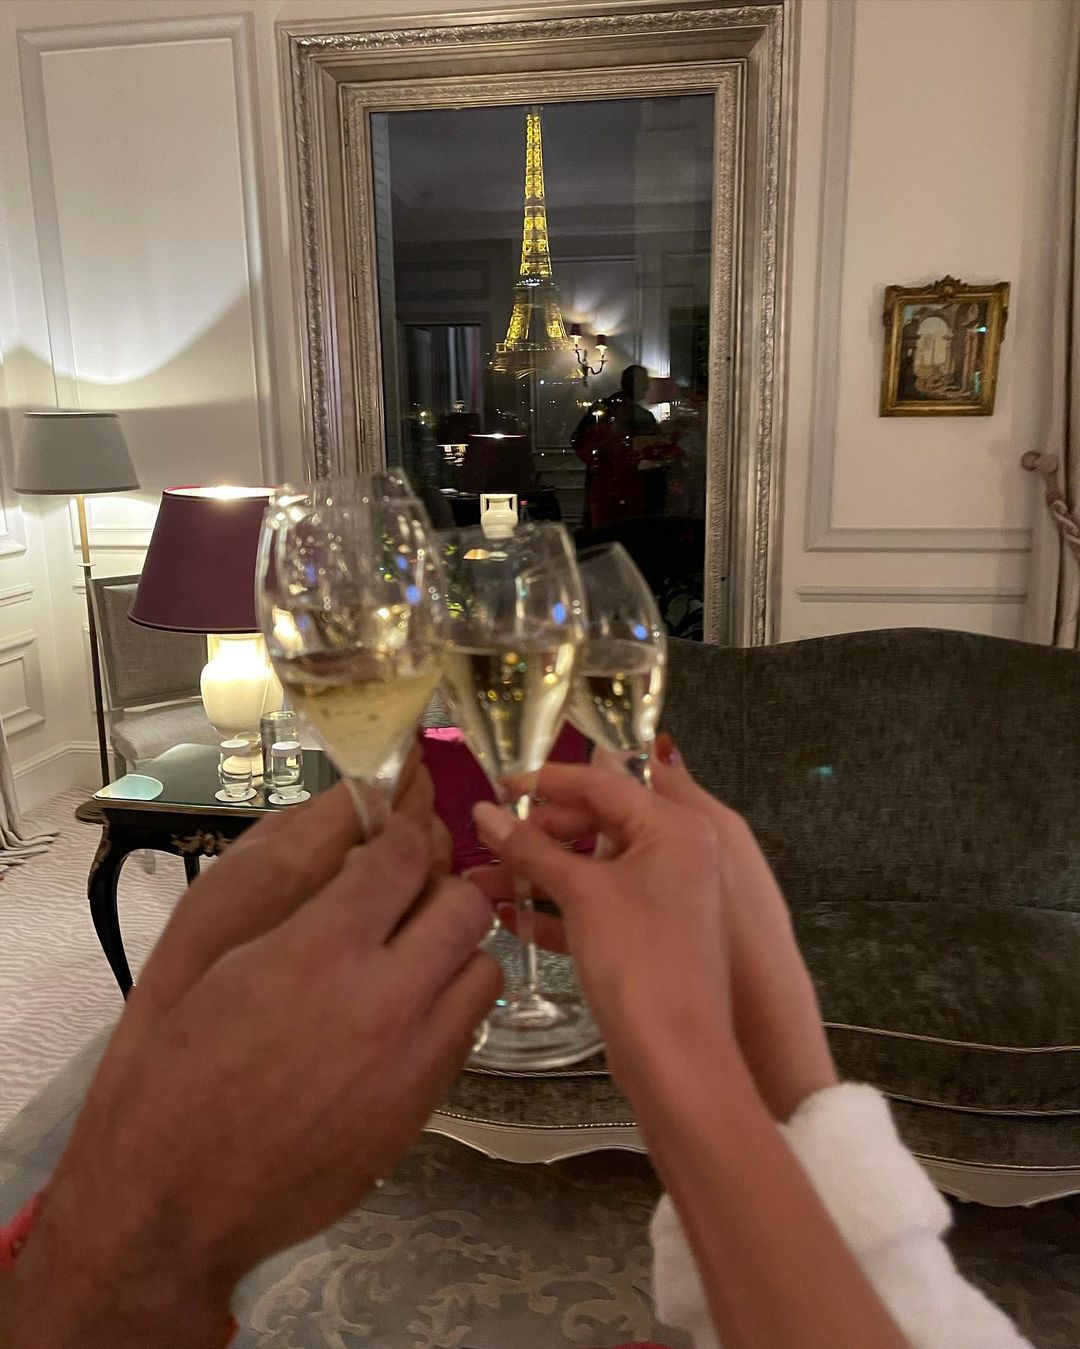 Atriz celebrou aniversário da irmã em Paris. Bruna Marquezine se hospeda em hotel com diárias de R$ 40 mil: fotos